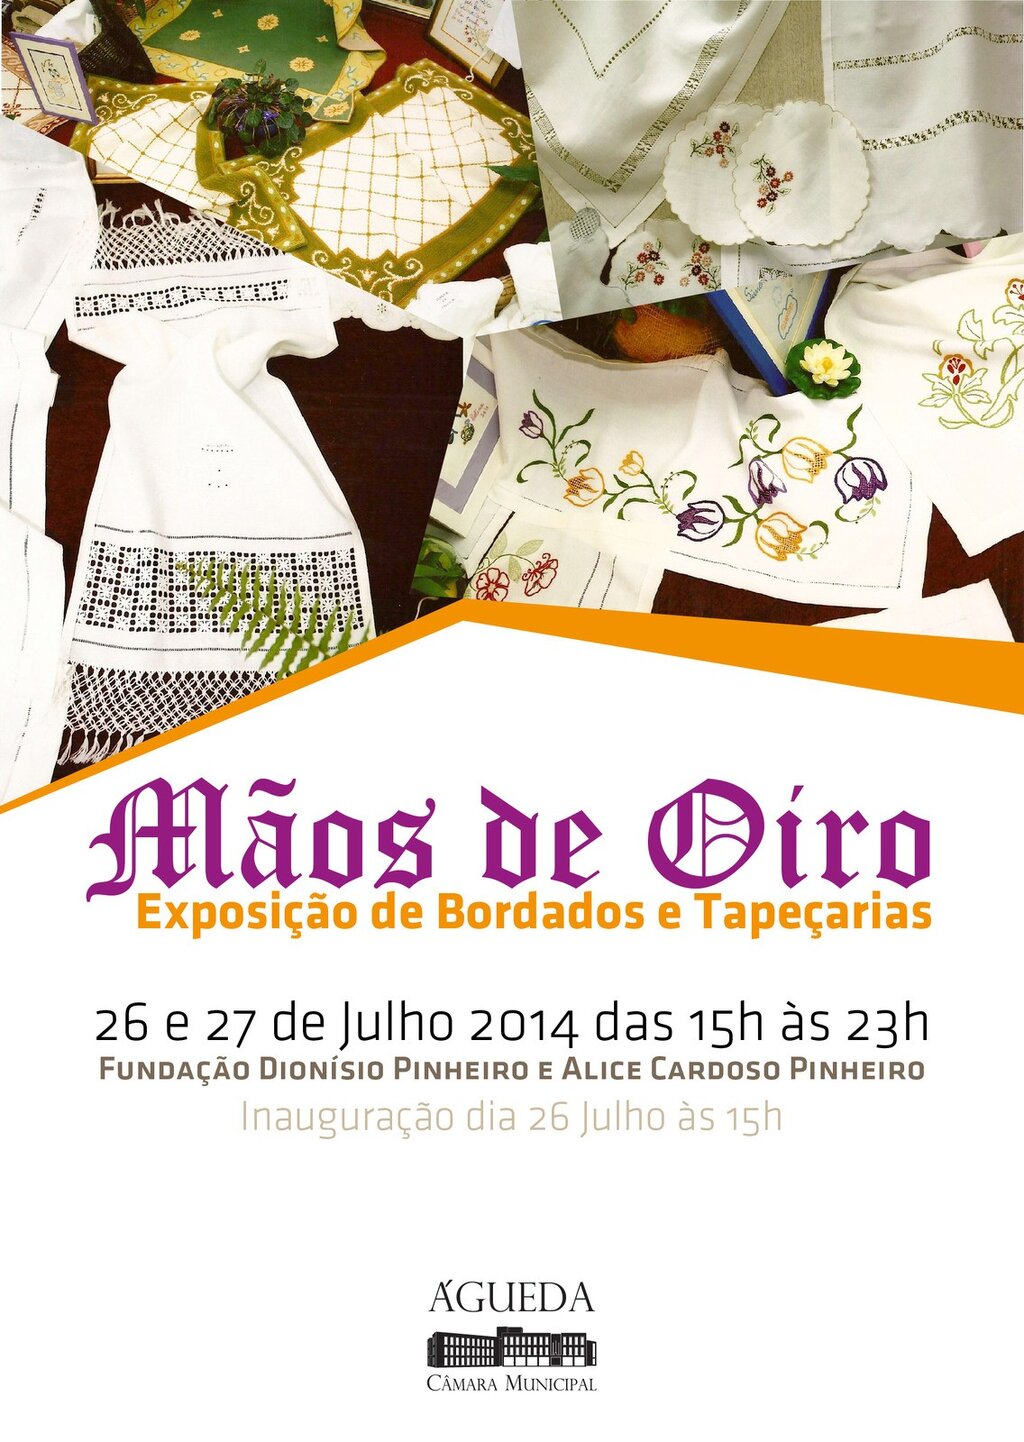 Exposição de Bordados e Tapeçarias "MÃOS DE OIRO"